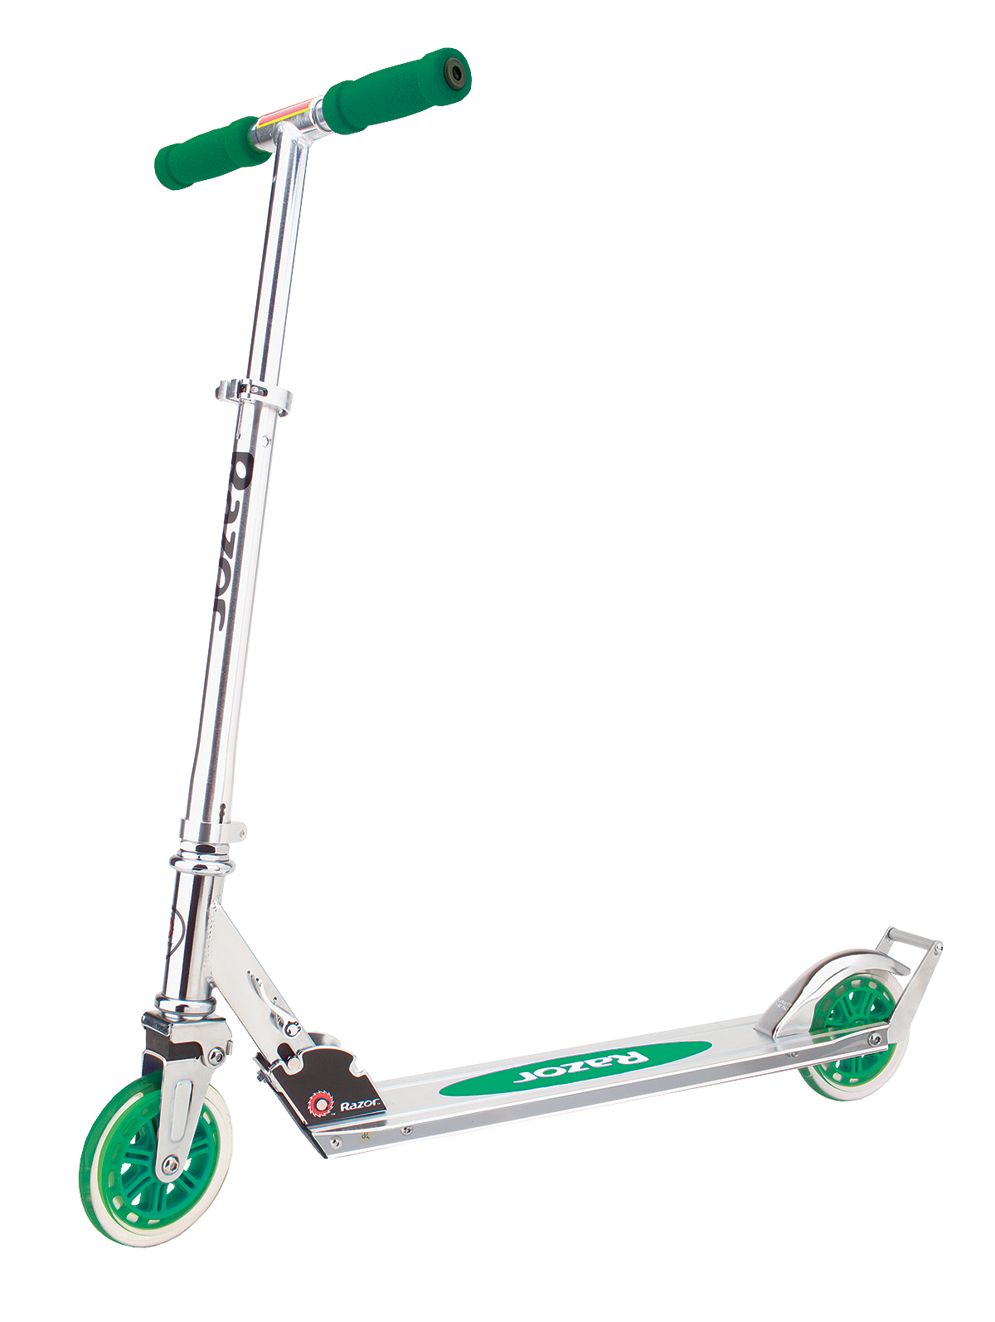 razor 3 wheel scooter